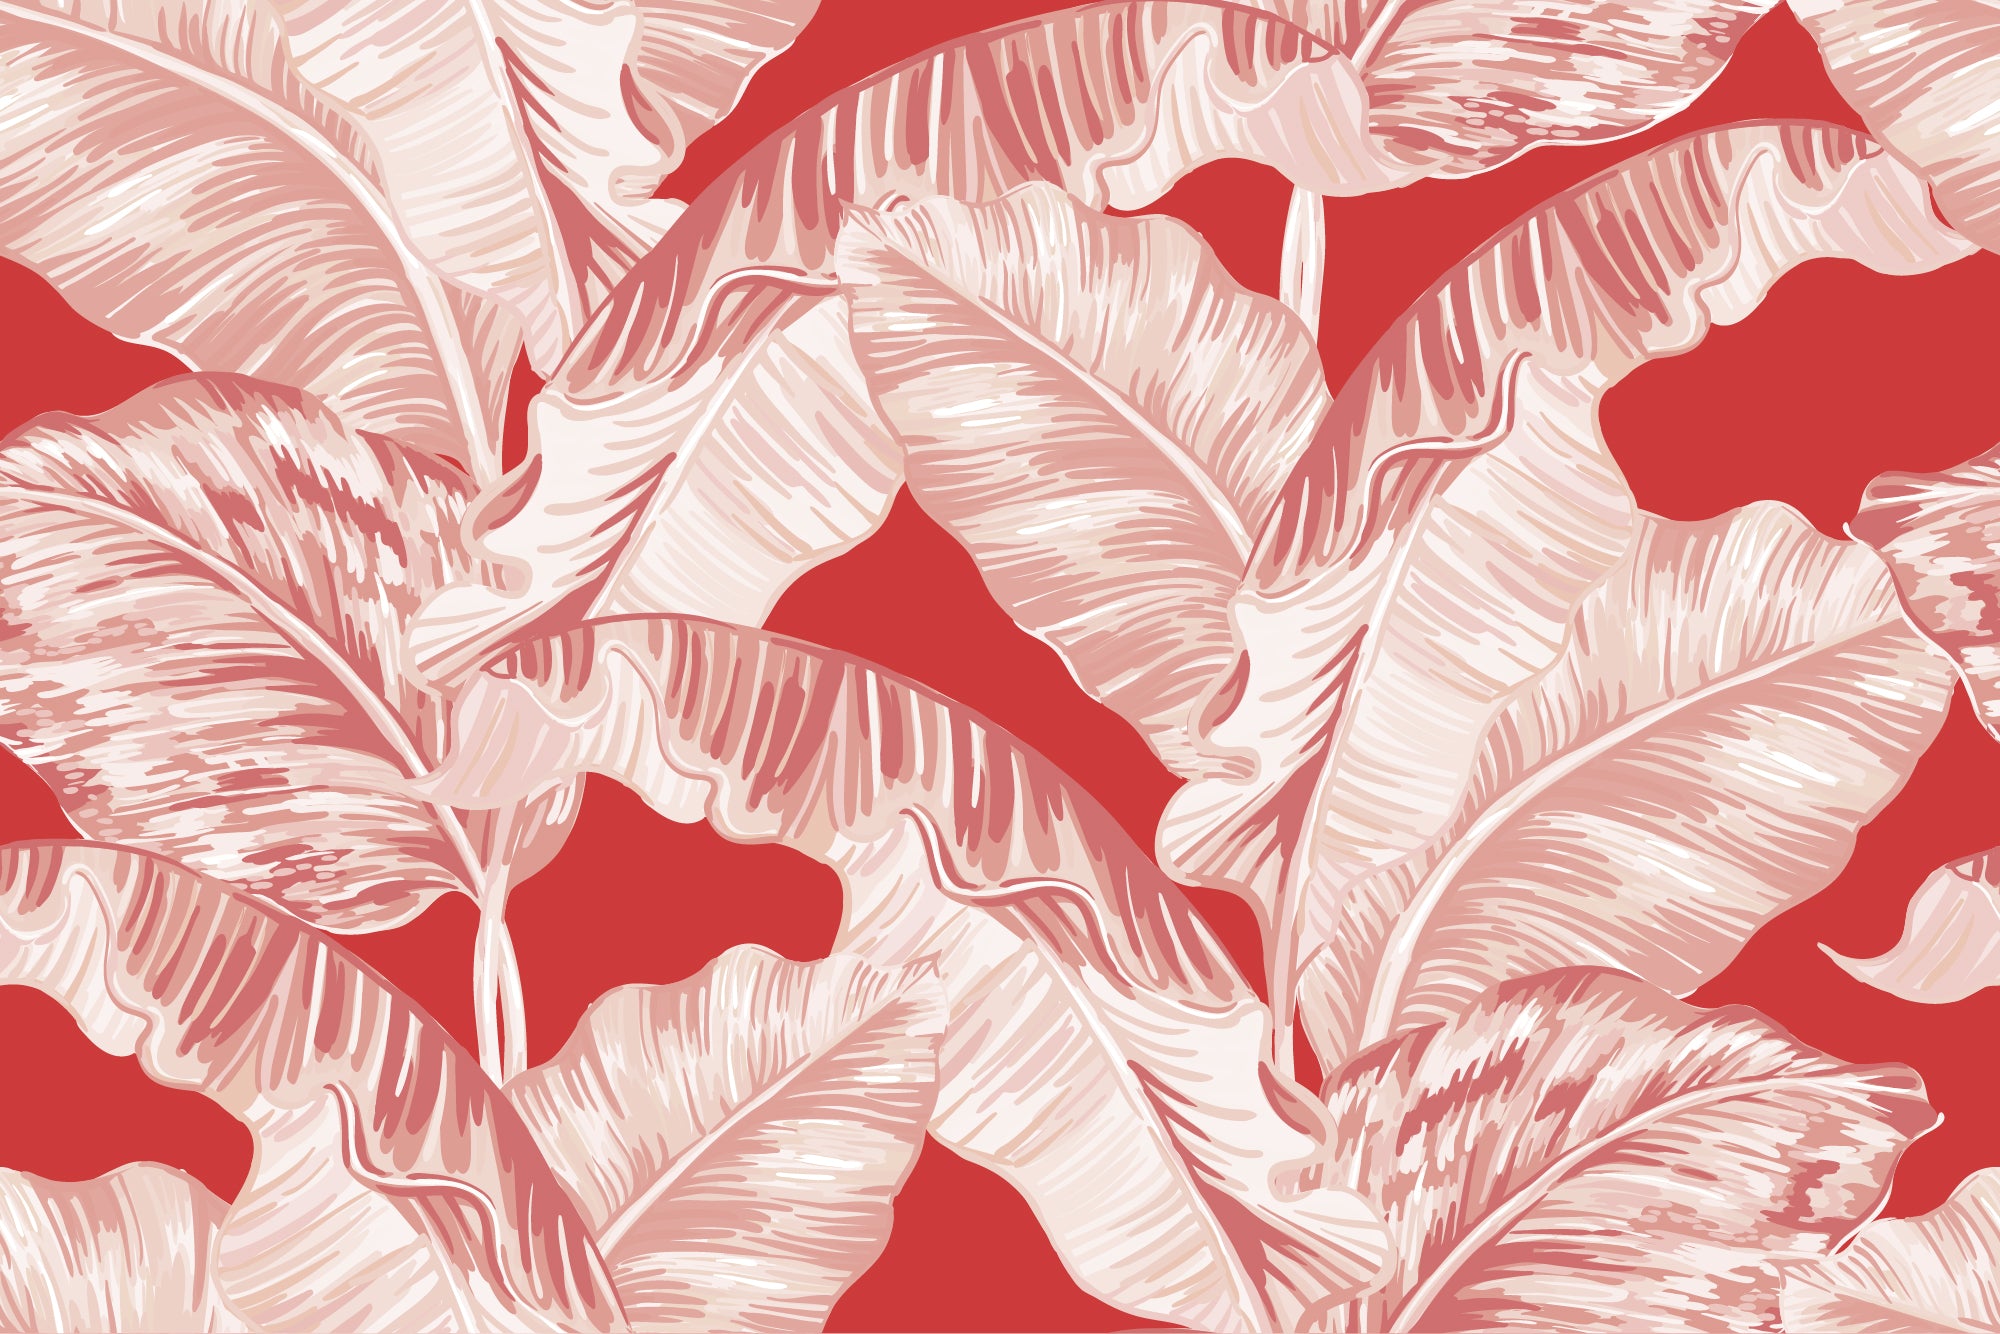 Banana Leaf Merah - Pink & Red Banana Leaf Wallpaper Mural